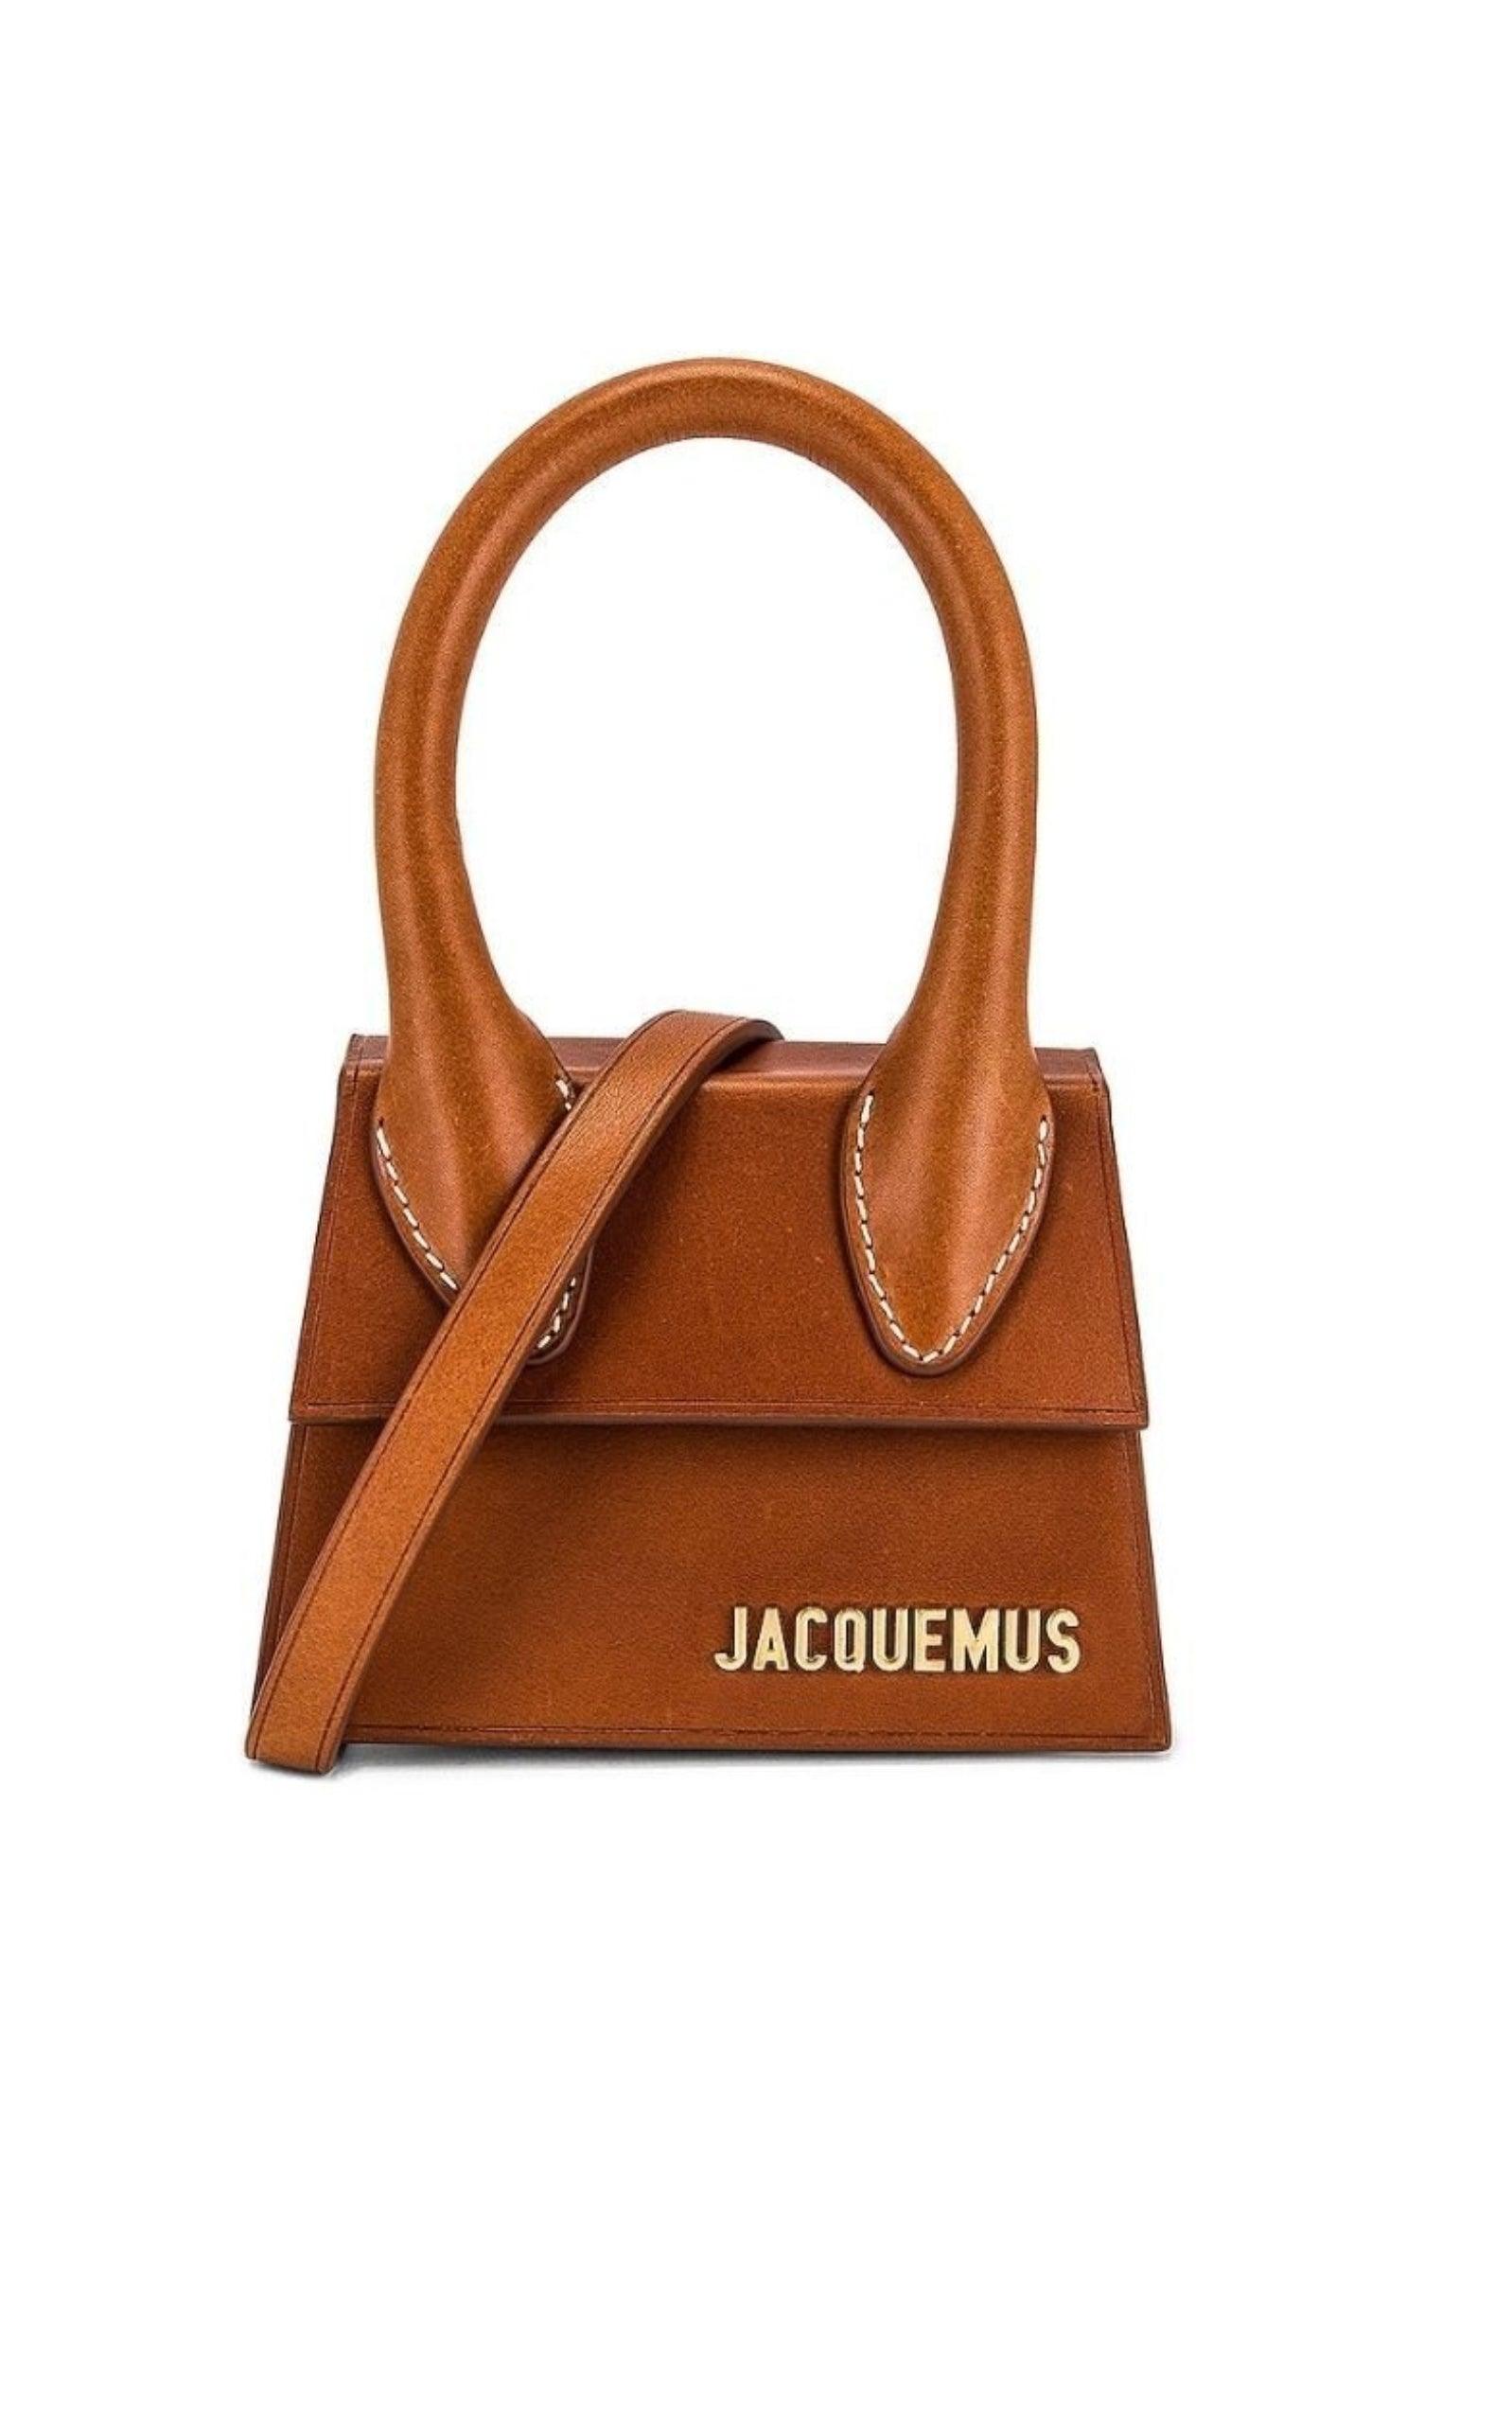 Jacquemus Bags